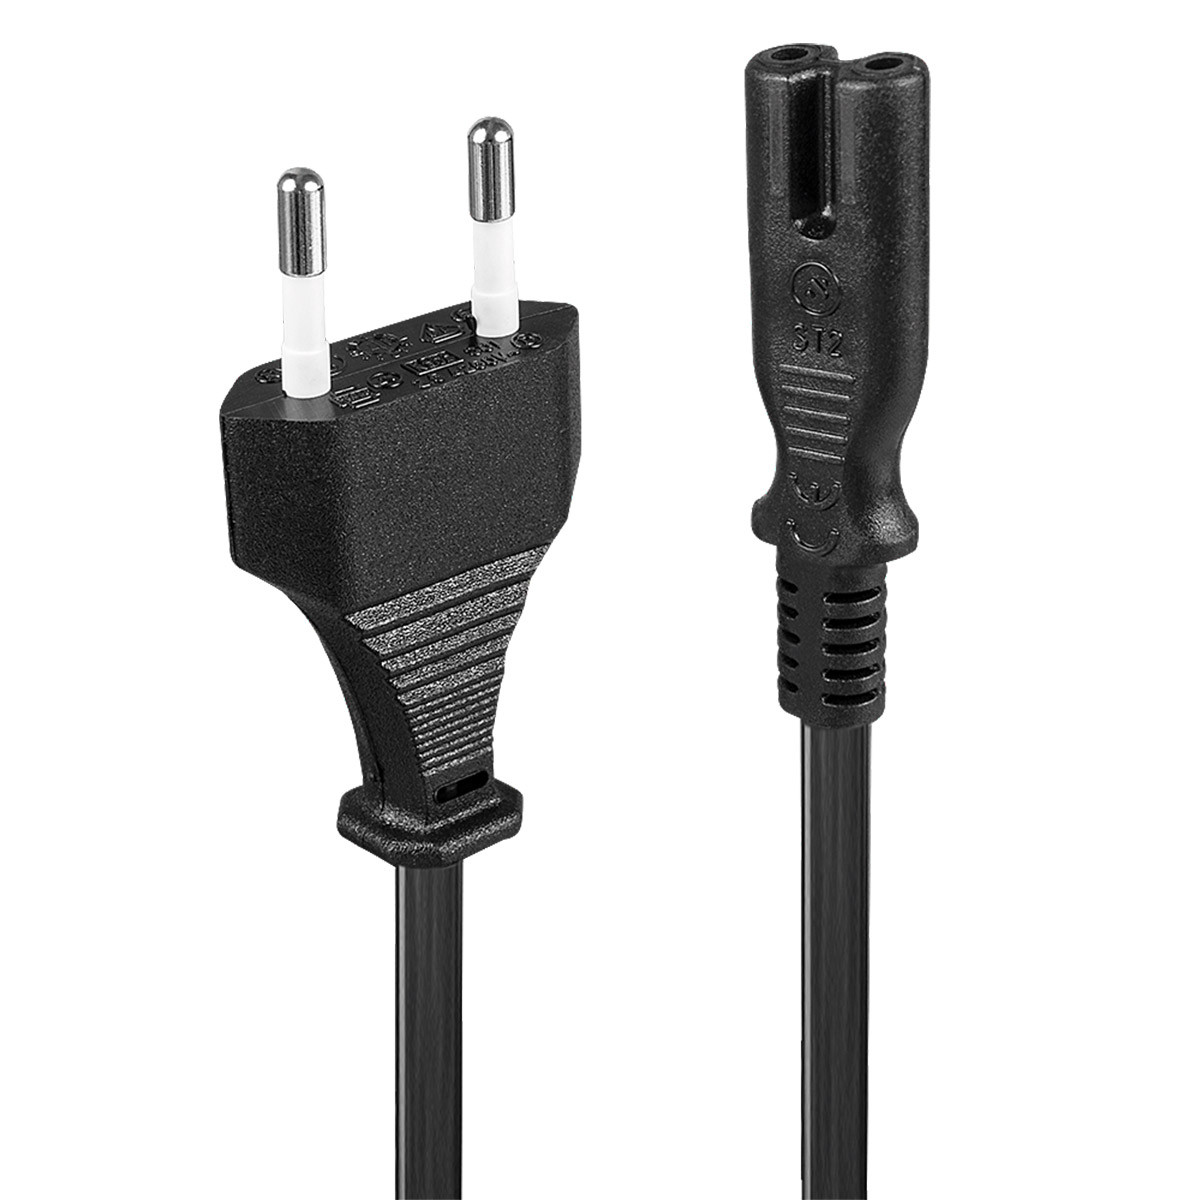 5M Noir Connecteur 4 broches Cable d'alimentation M-F pour systeme